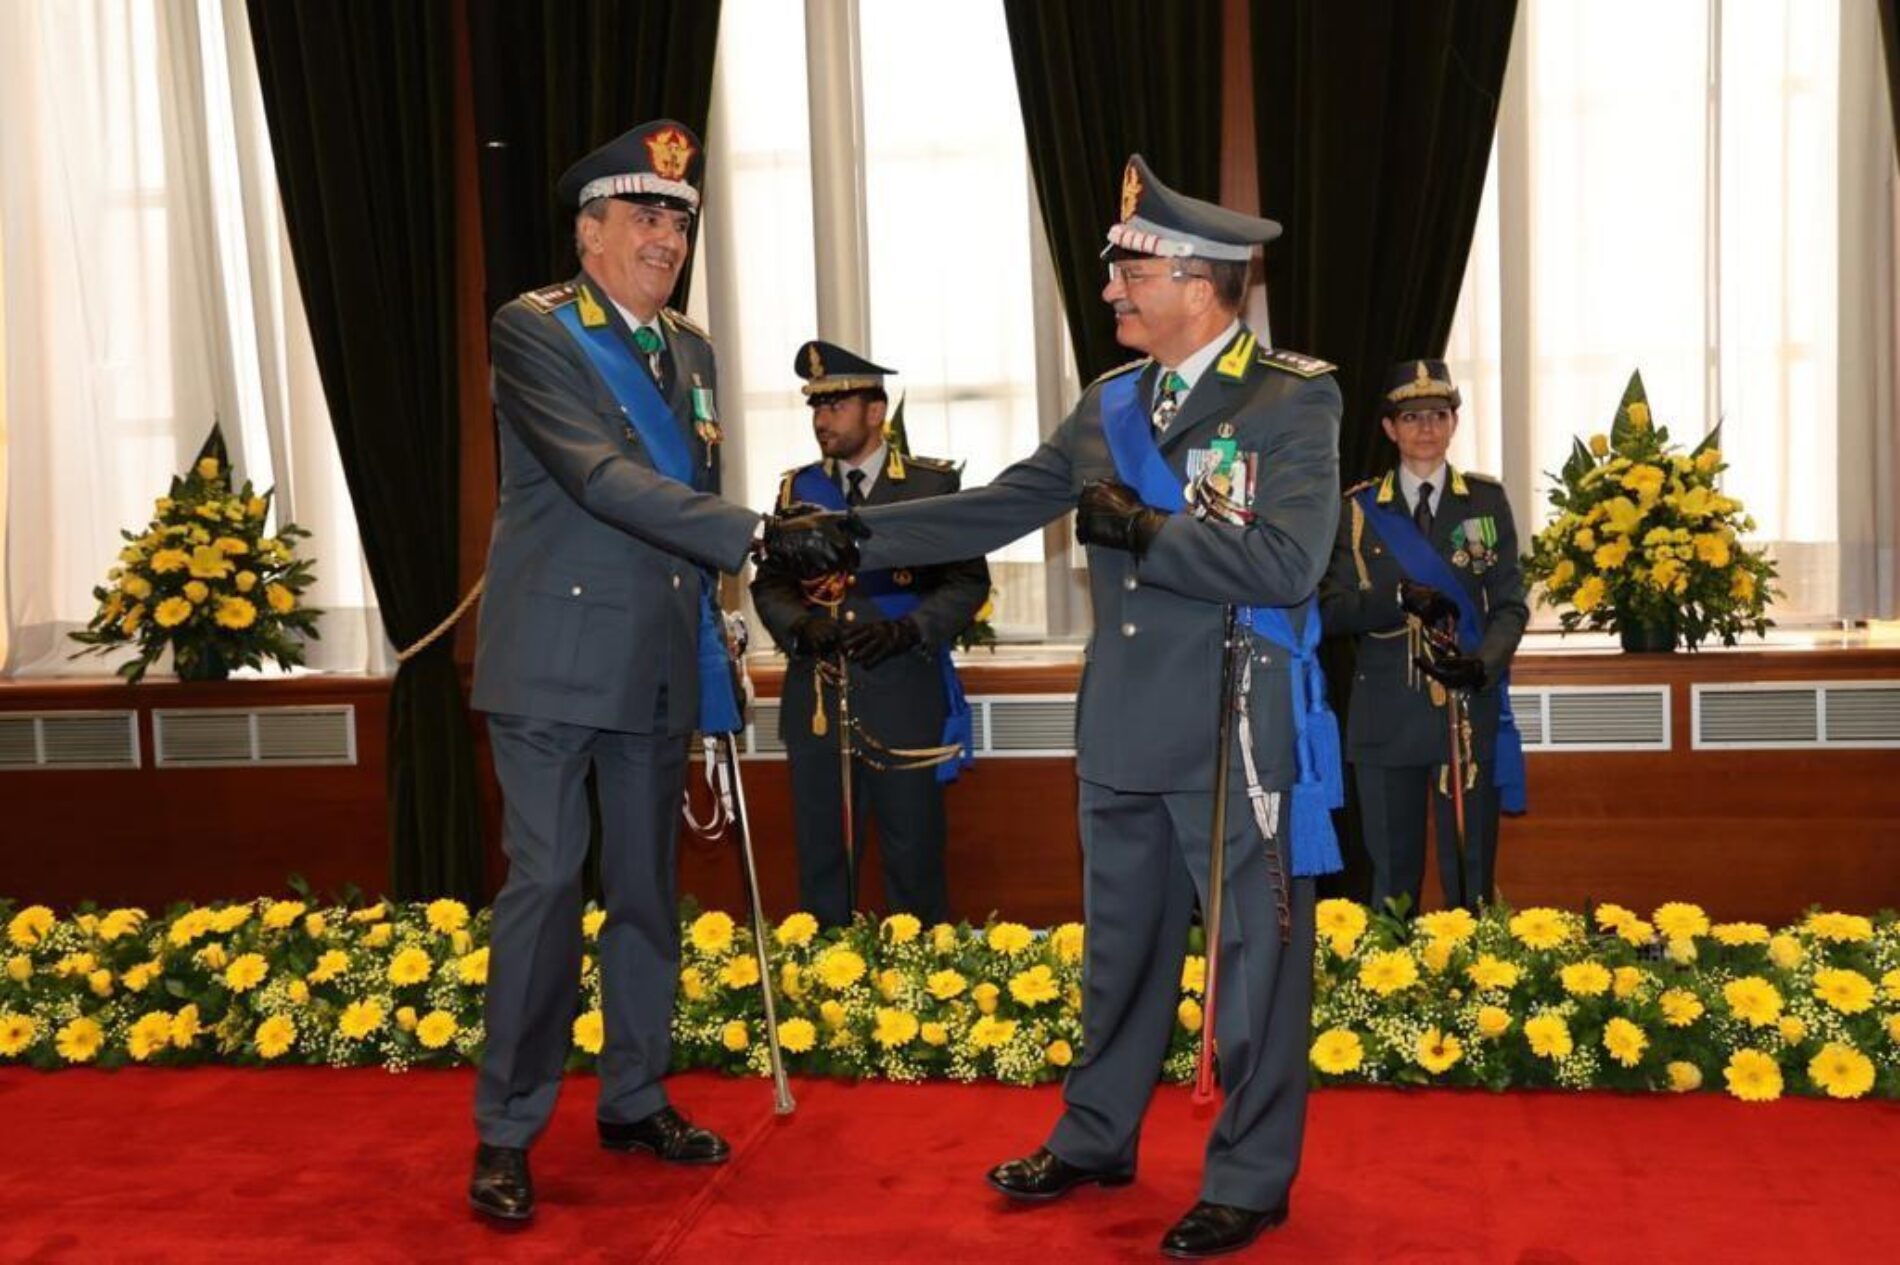 GUARDIA DI FINANZA. Il Generale Di Corpo D’Armata Andrea De Gennaro è il nuovo Comandante in Seconda della Guardia di Finanza